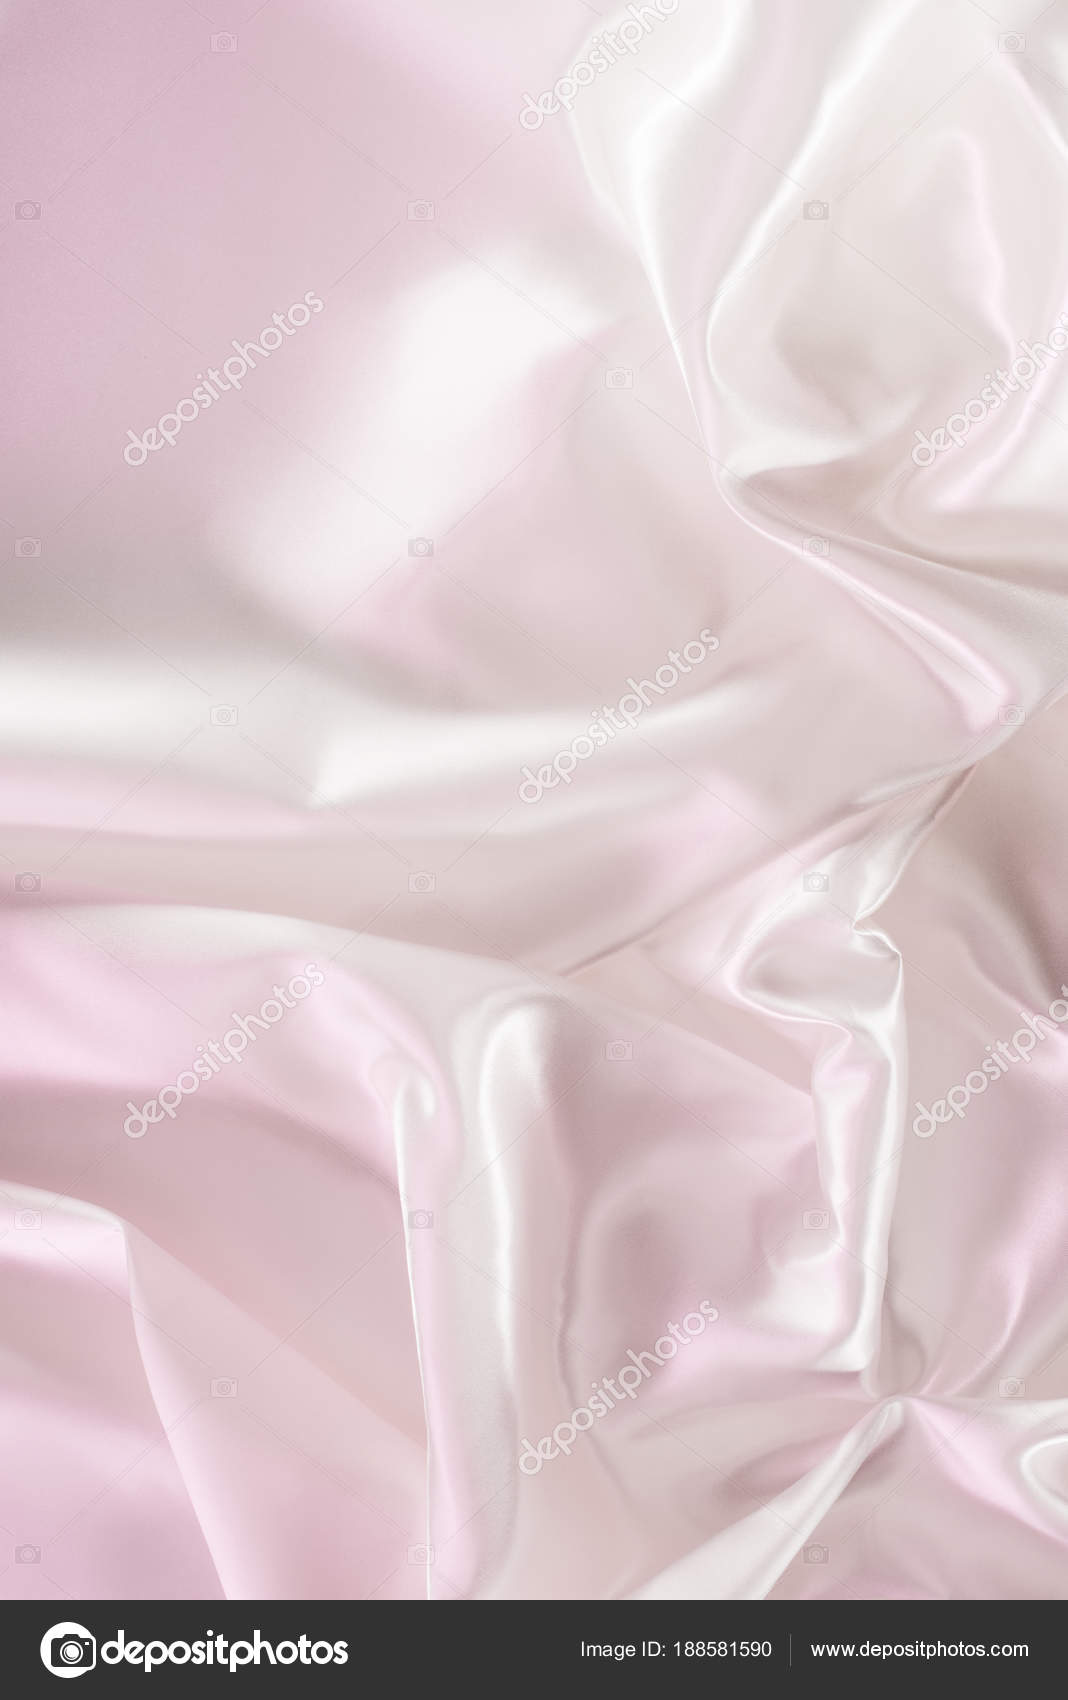 Nền vải tơ hồng nhẹ: Với màu hồng nhẹ nhàng, nền vải tơ hồng nhẹ sẽ giúp bất kỳ sản phẩm nào khoe sắc hơn. Được thiết kế để thể hiện sự tinh tế và độ nhẹ nhàng, vải tơ hồng sẽ giúp bạn tạo nên những bức ảnh perfect flatlay.